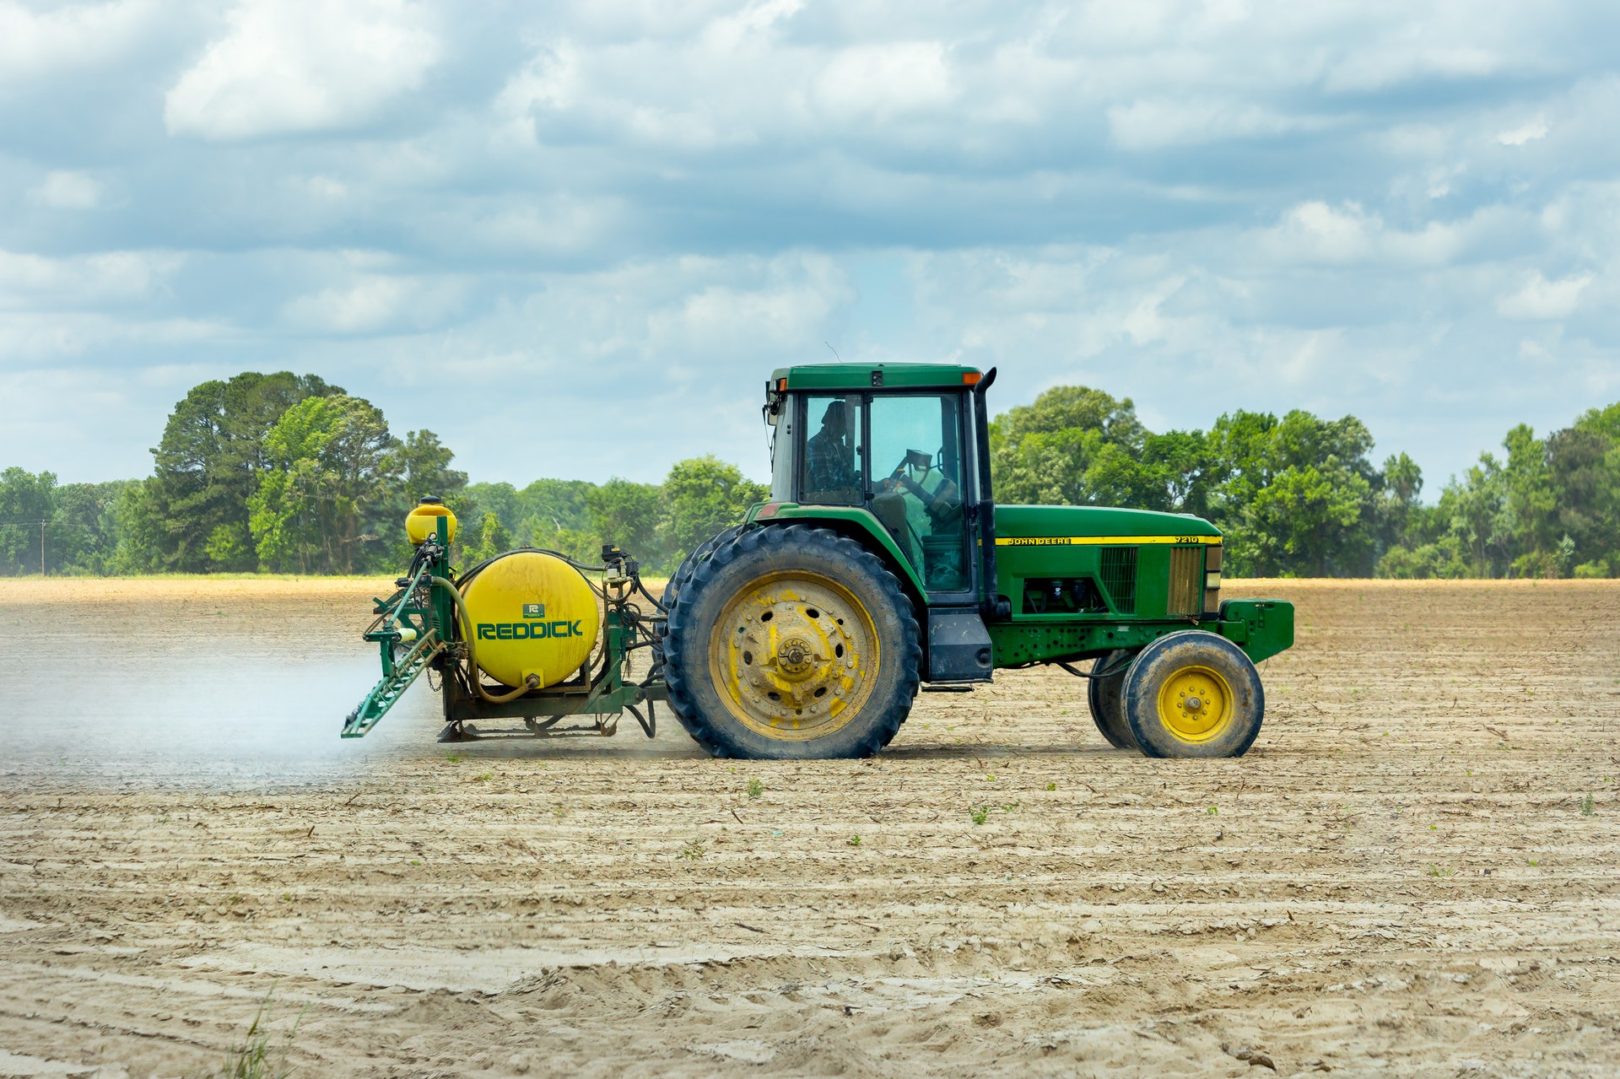 Máquinas agrícolas e tratores têm recuo de 7% nas vendas. Foto/Reprodução: John Lambeth no Pexels